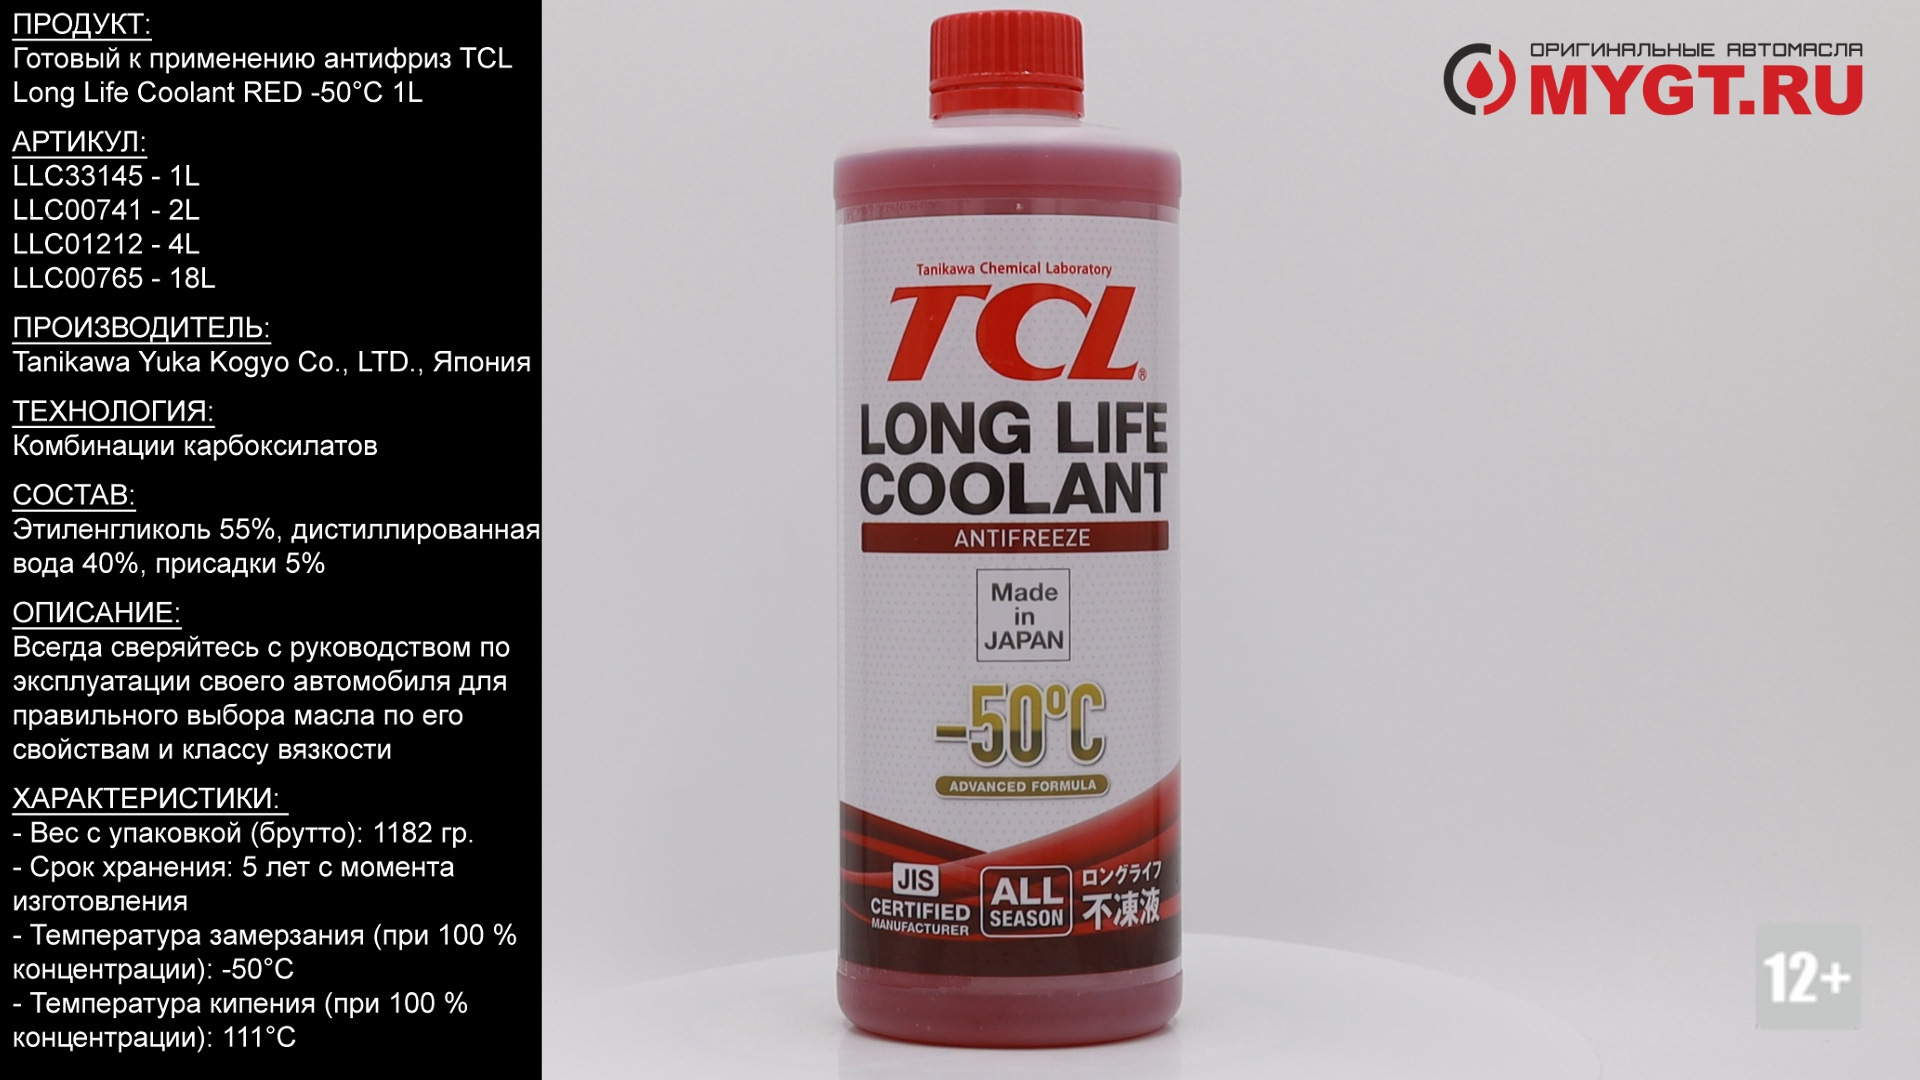 Tcl long life. Антифриз TCL LLC Red -50. Антифриз LLC -50c Red (llc0765). Антифриз TCL красный -50. Антифриз TCL long Life Coolant -40 c.